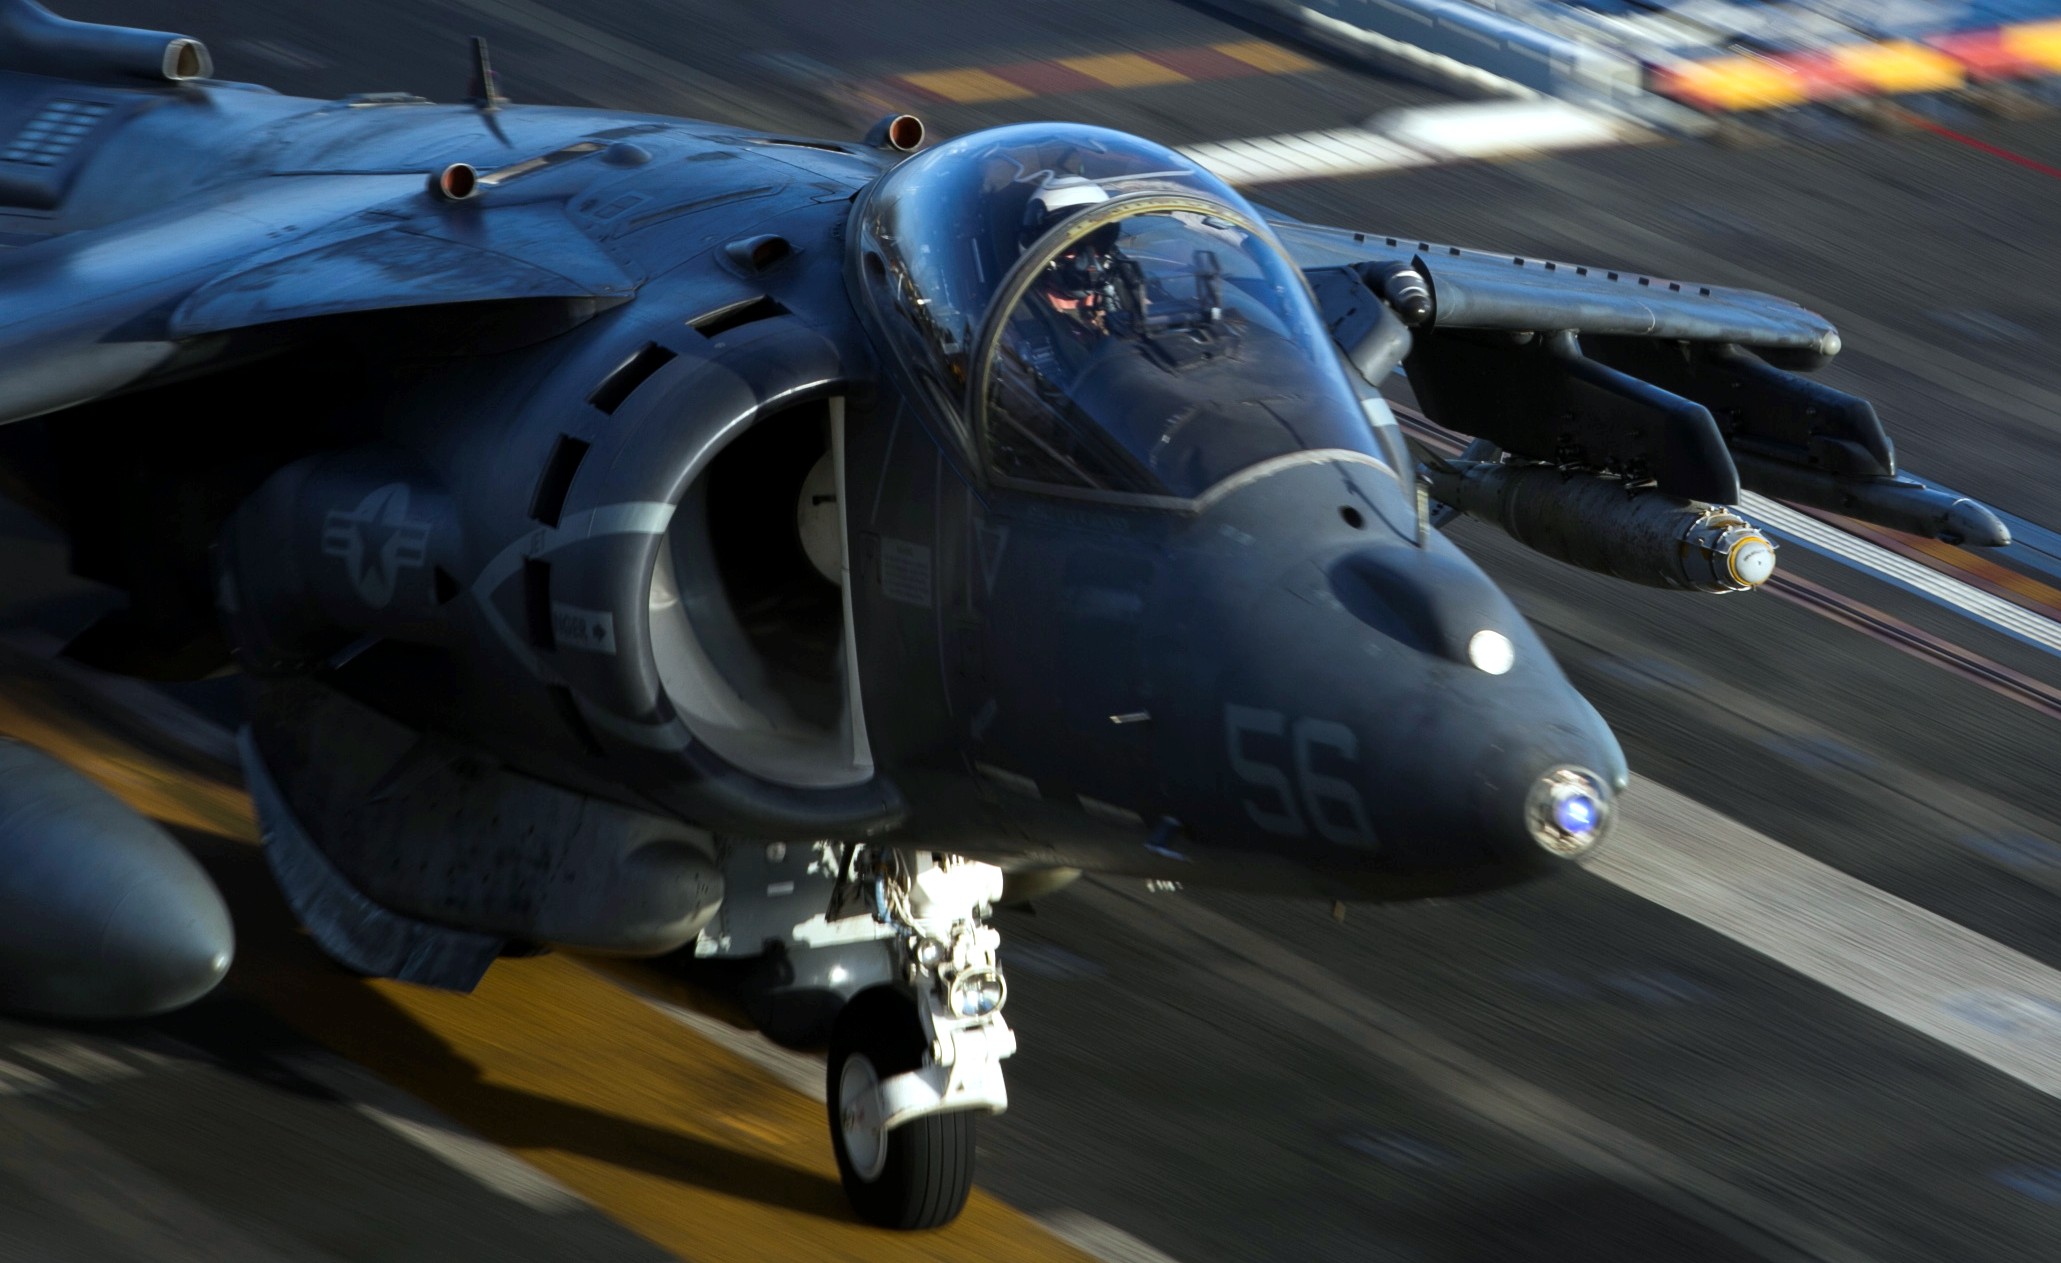 Av 8b. Av-8b Harrier 2. Av-8b Harrier. Harrier av-8b "Night Attack". Av-8b Harrier II Night Attack.